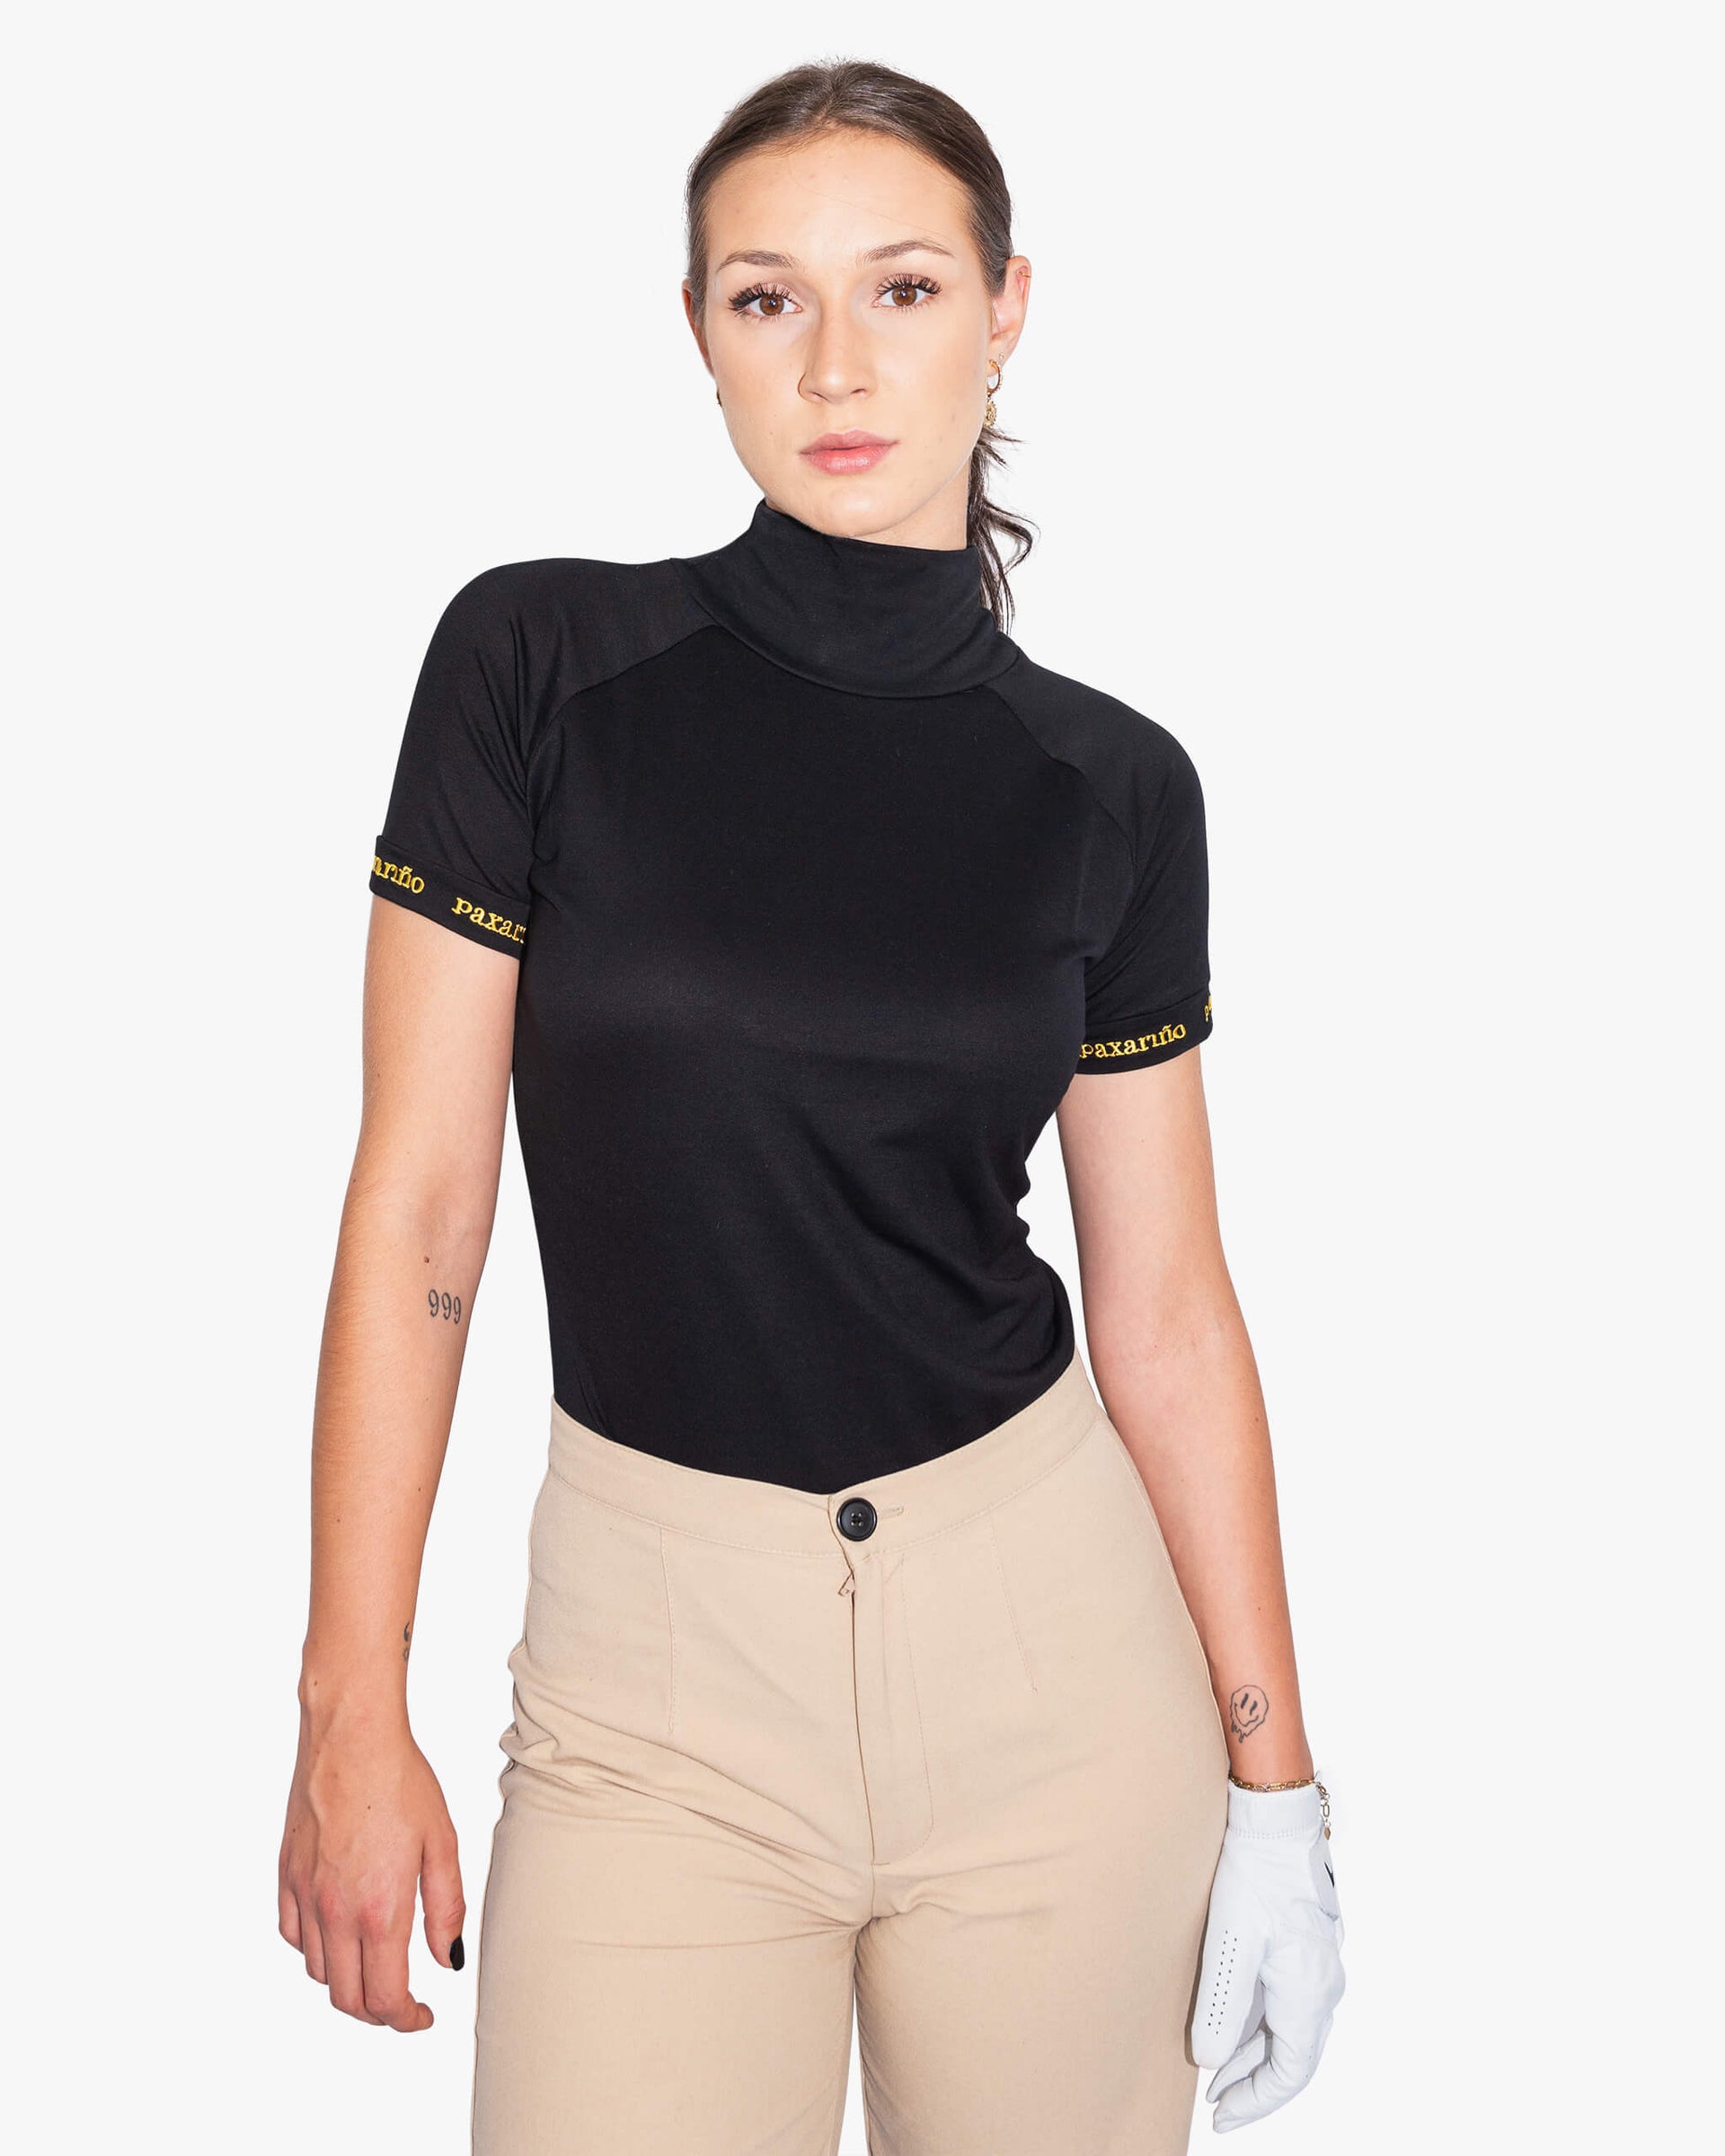 Signature Tee | Golf Shirt für Damen | paxariño